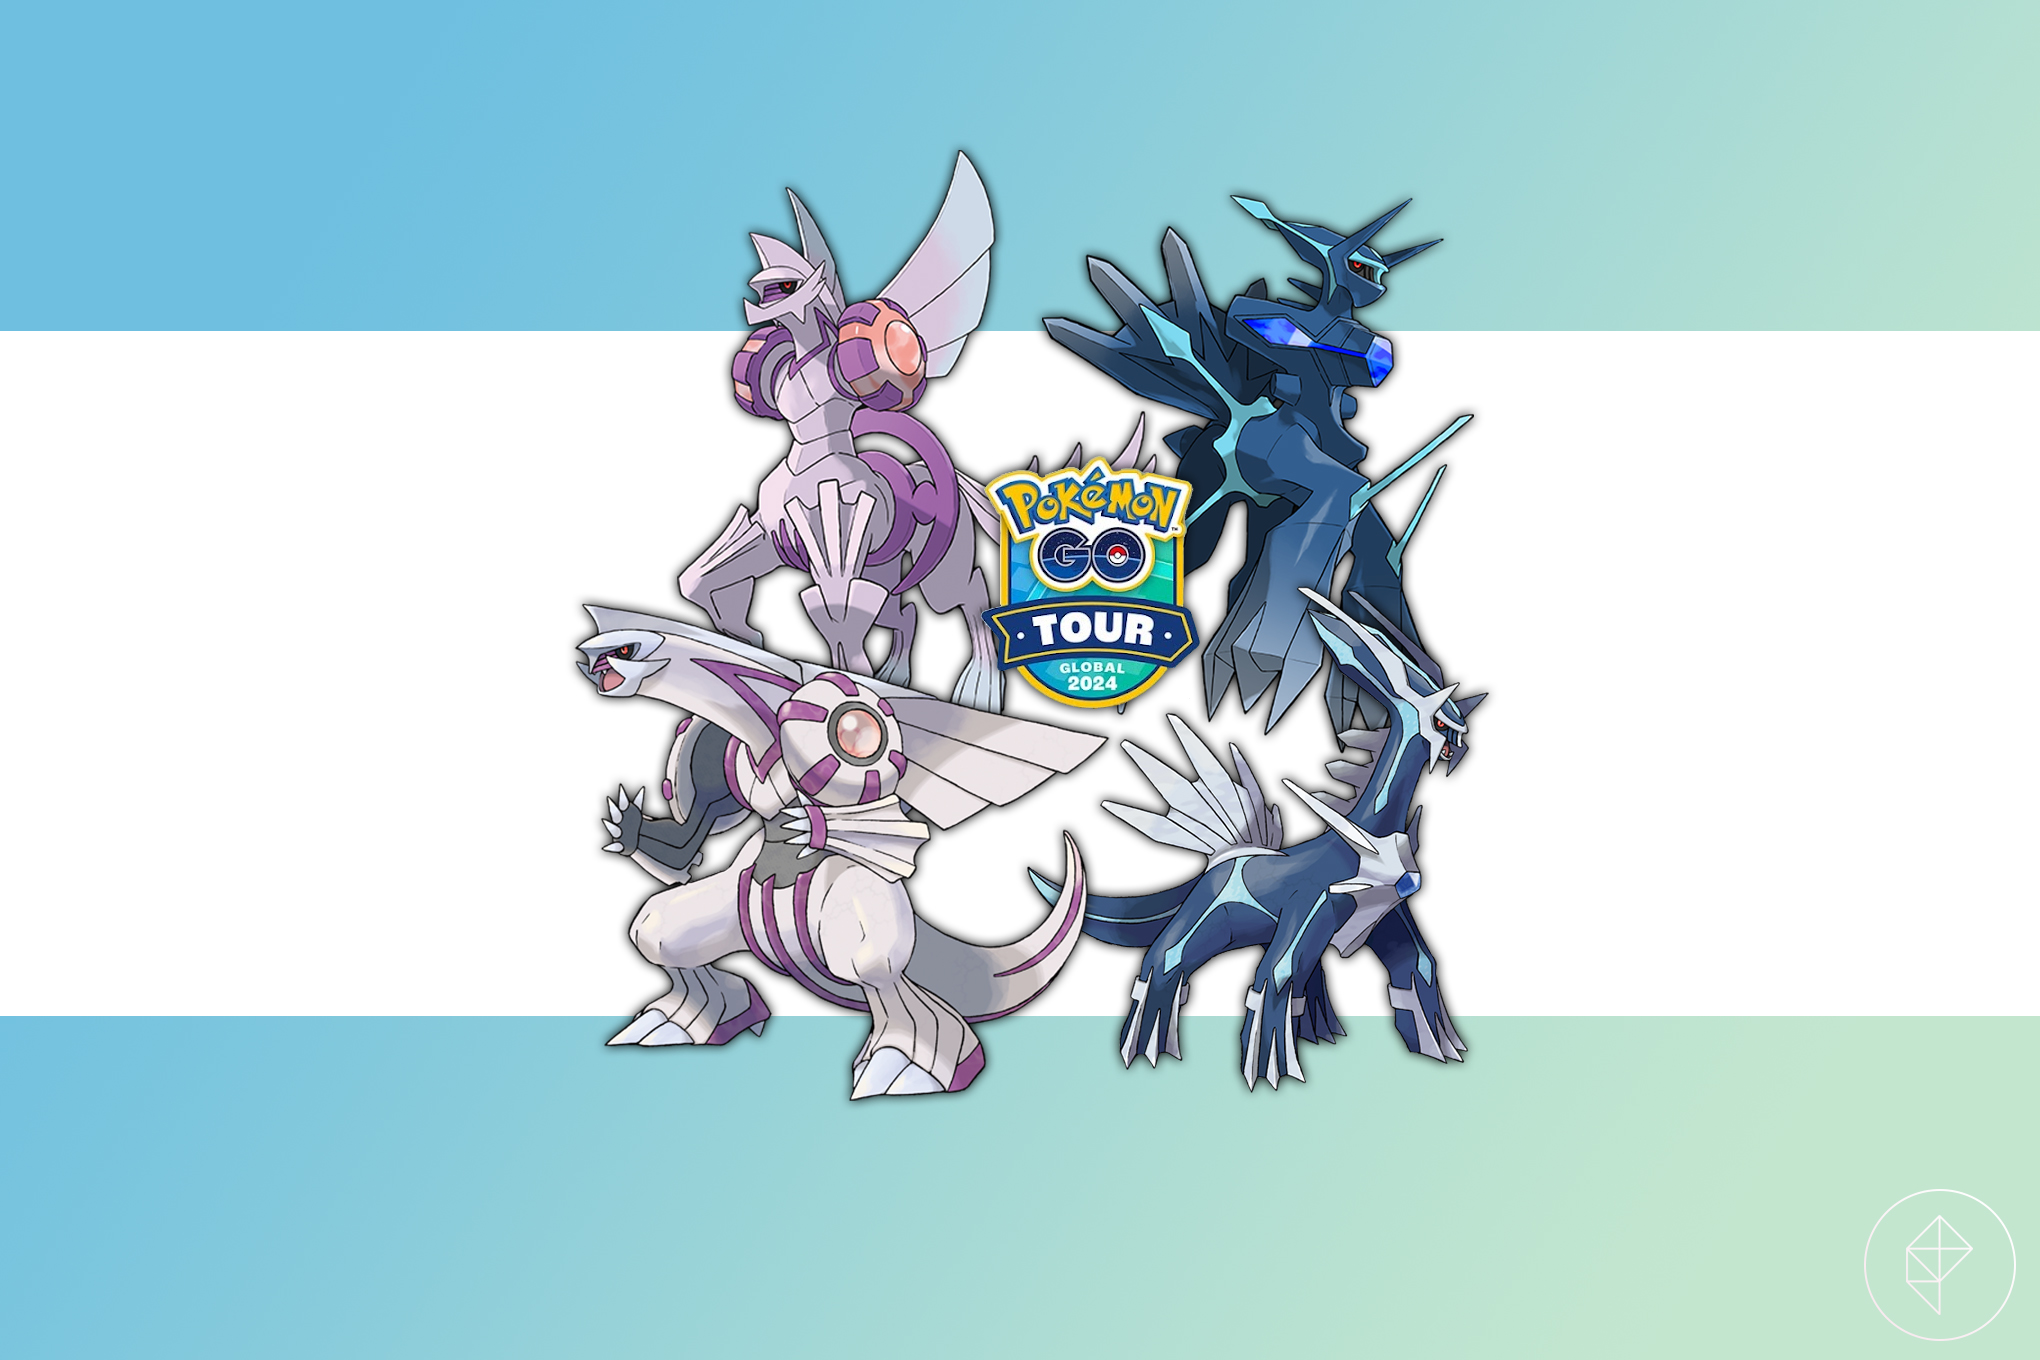 Dialga, Palkia, and their origin forms around the Pokémon Go Tour global logo.